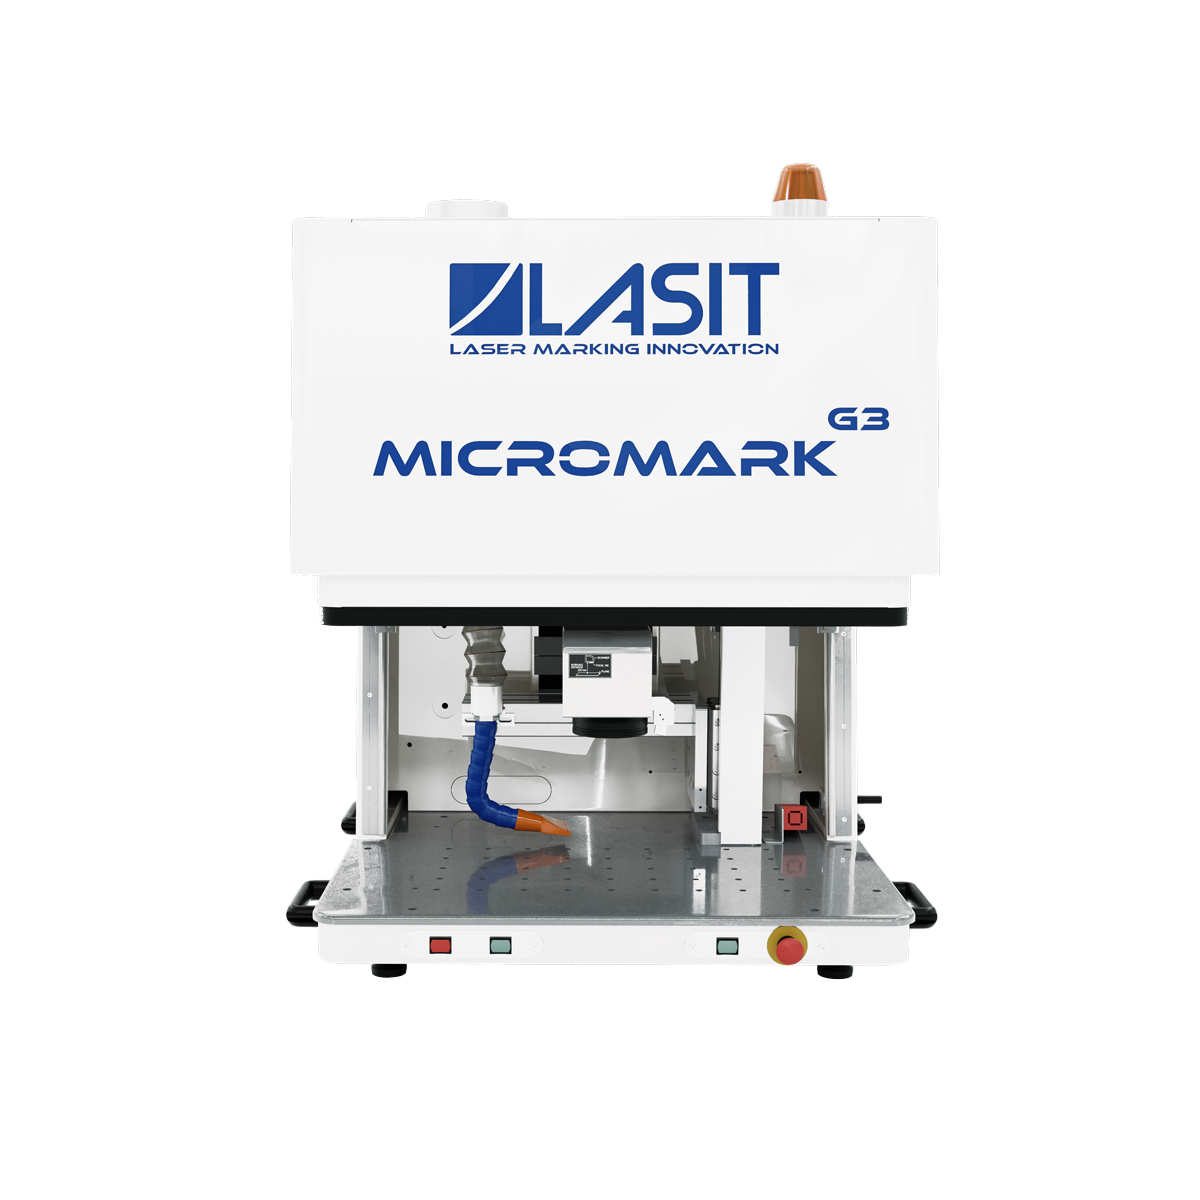 Micromark_web-02 LASIT odpowiada na 10 najczęstszych pytań dotyczących znakowania laserowego